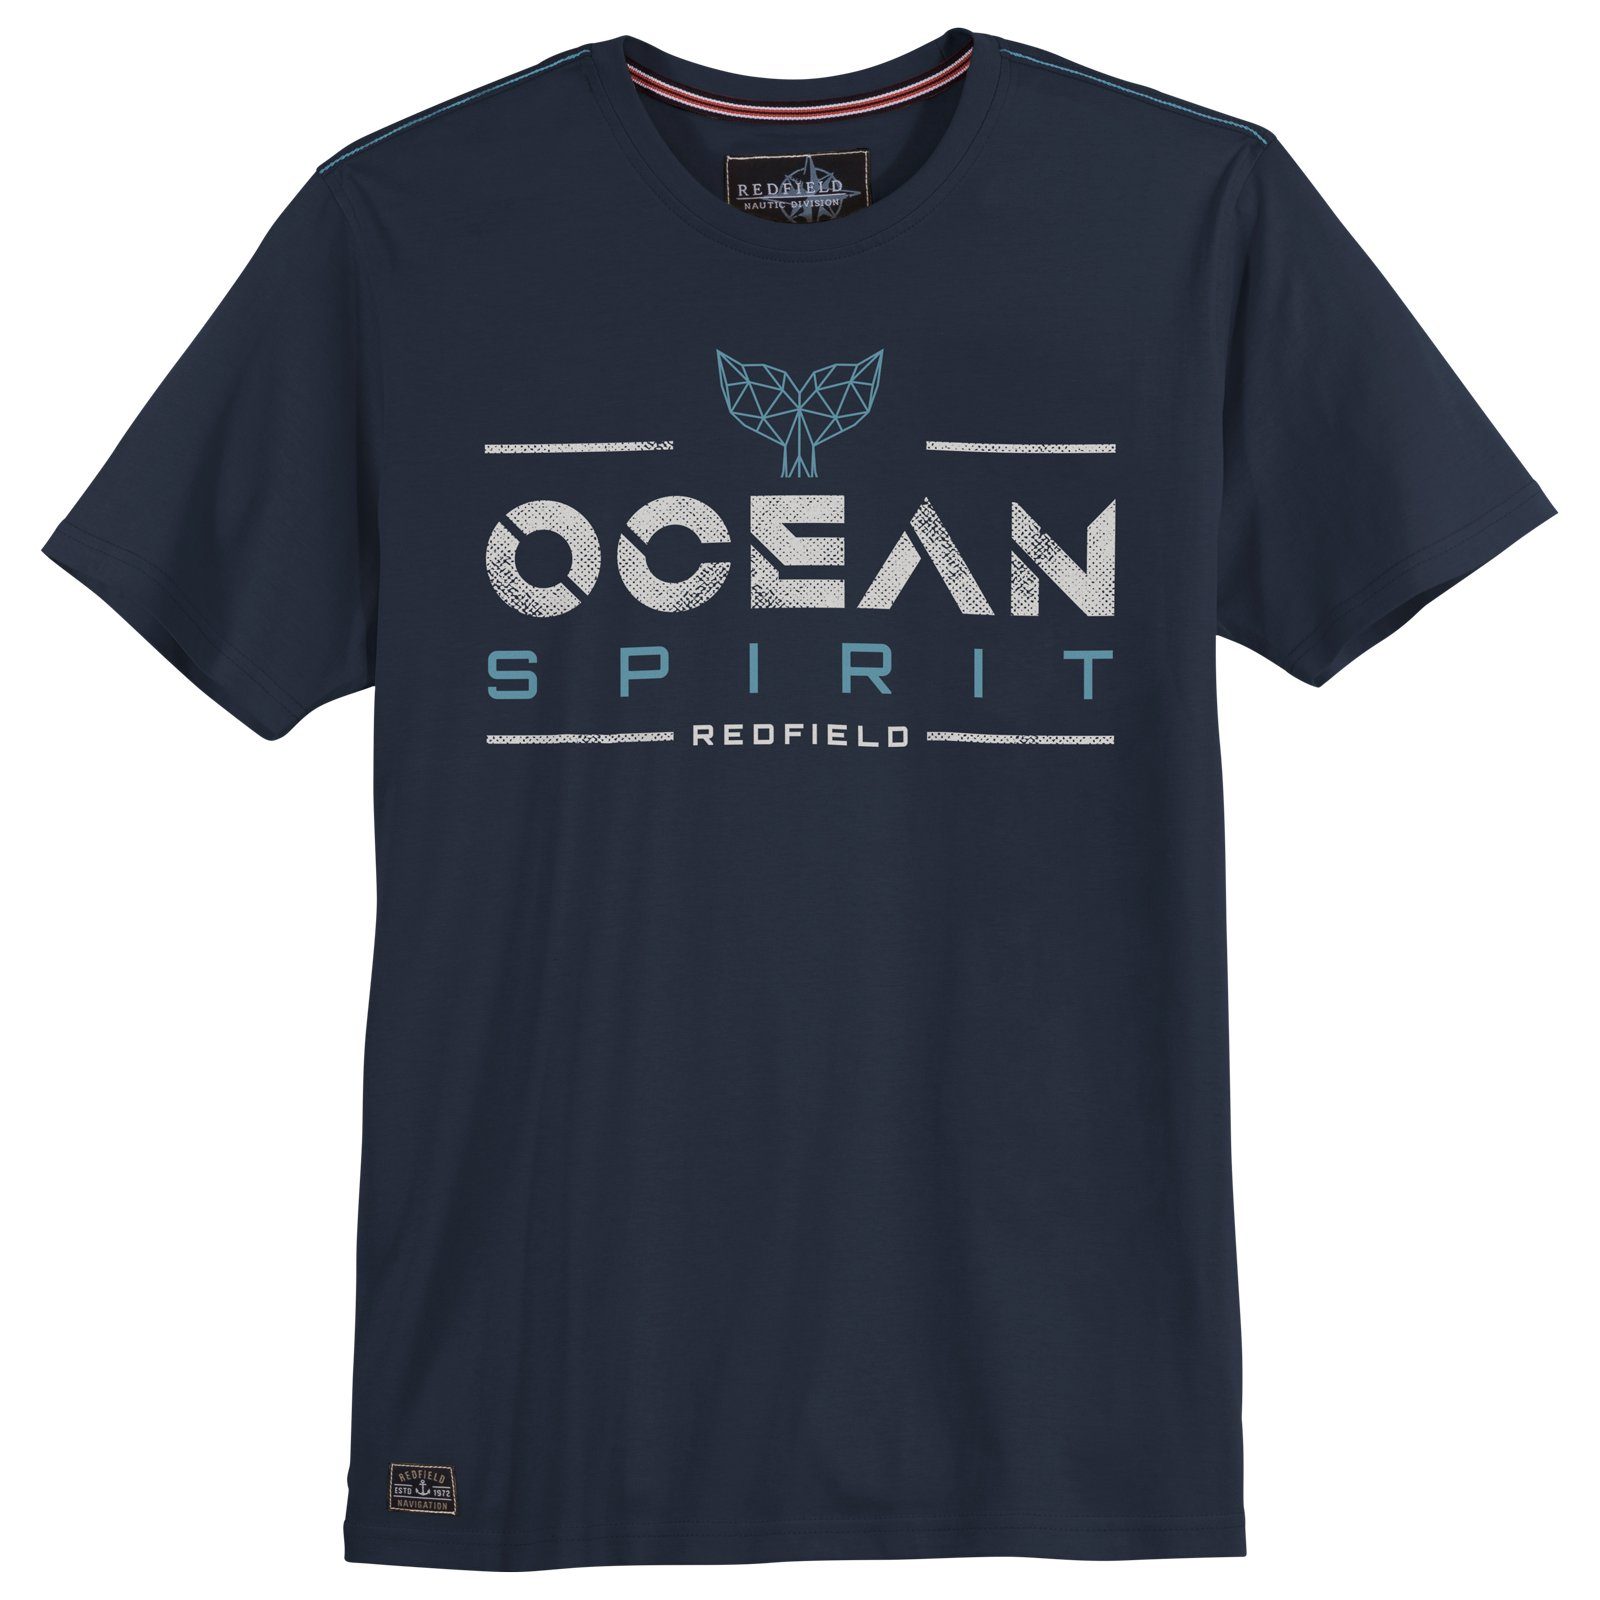 redfield Rundhalsshirt Große Größen Herren T-Shirt navy Print Ocean Spirit Redfield